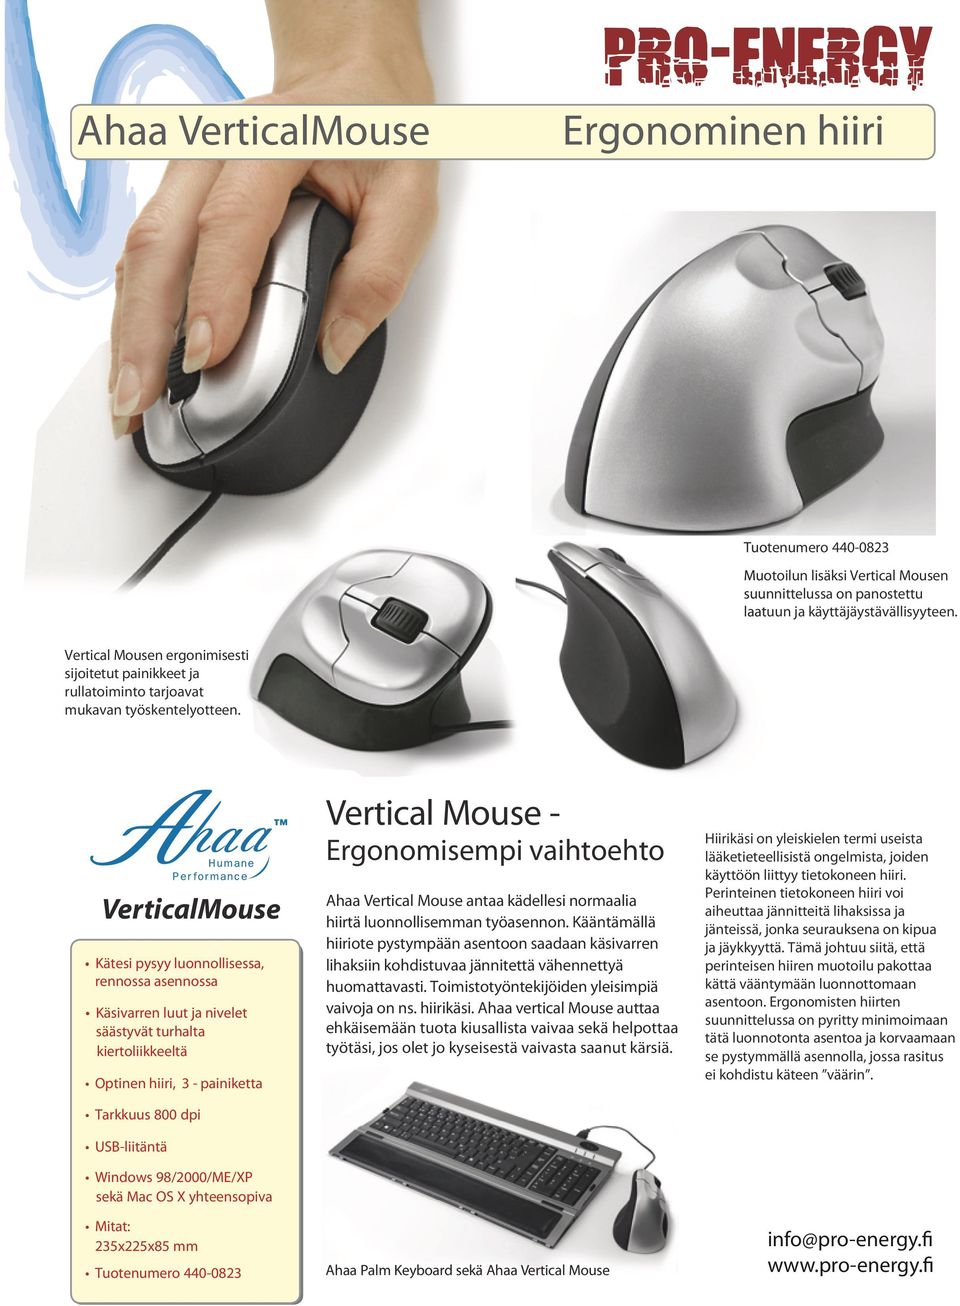 VerticalMouse Kätesi pysyy luonnollisessa, rennossa asennossa Käsivarren luut ja nivelet säästyvät turhalta kiertoliikkeeltä Optinen hiiri, 3 - painiketta Tarkkuus 800 dpi USB-liitäntä Windows